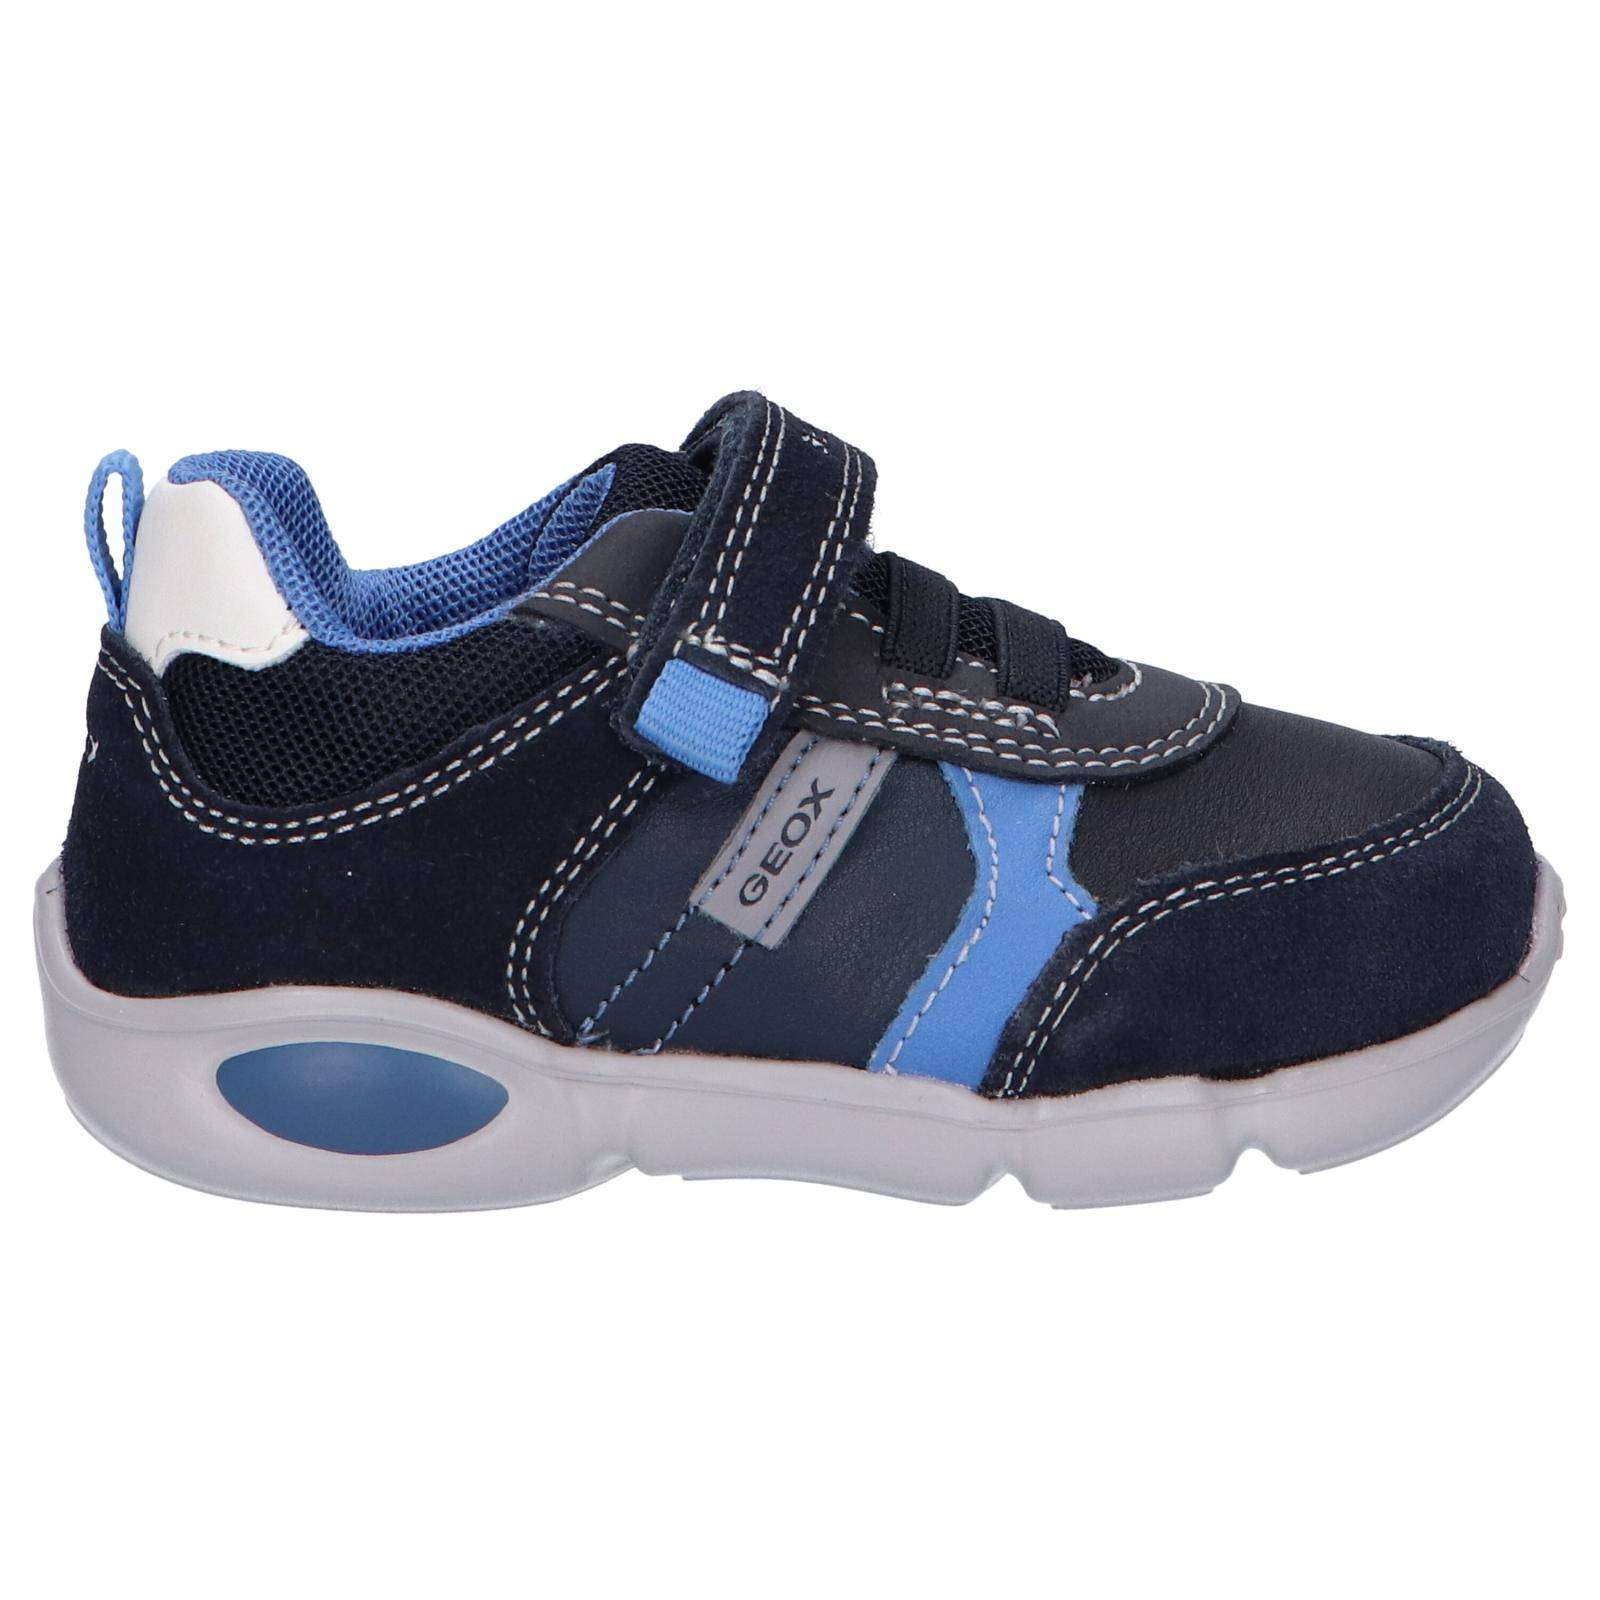 Zapatillas de la marca Geox, modelo B154EA en color azul. Zapatillas deportiva de bebé en piel y textil. Plantilla acolchada, suela de goma  antideslizante, cierre de cordon elástico y velcro.